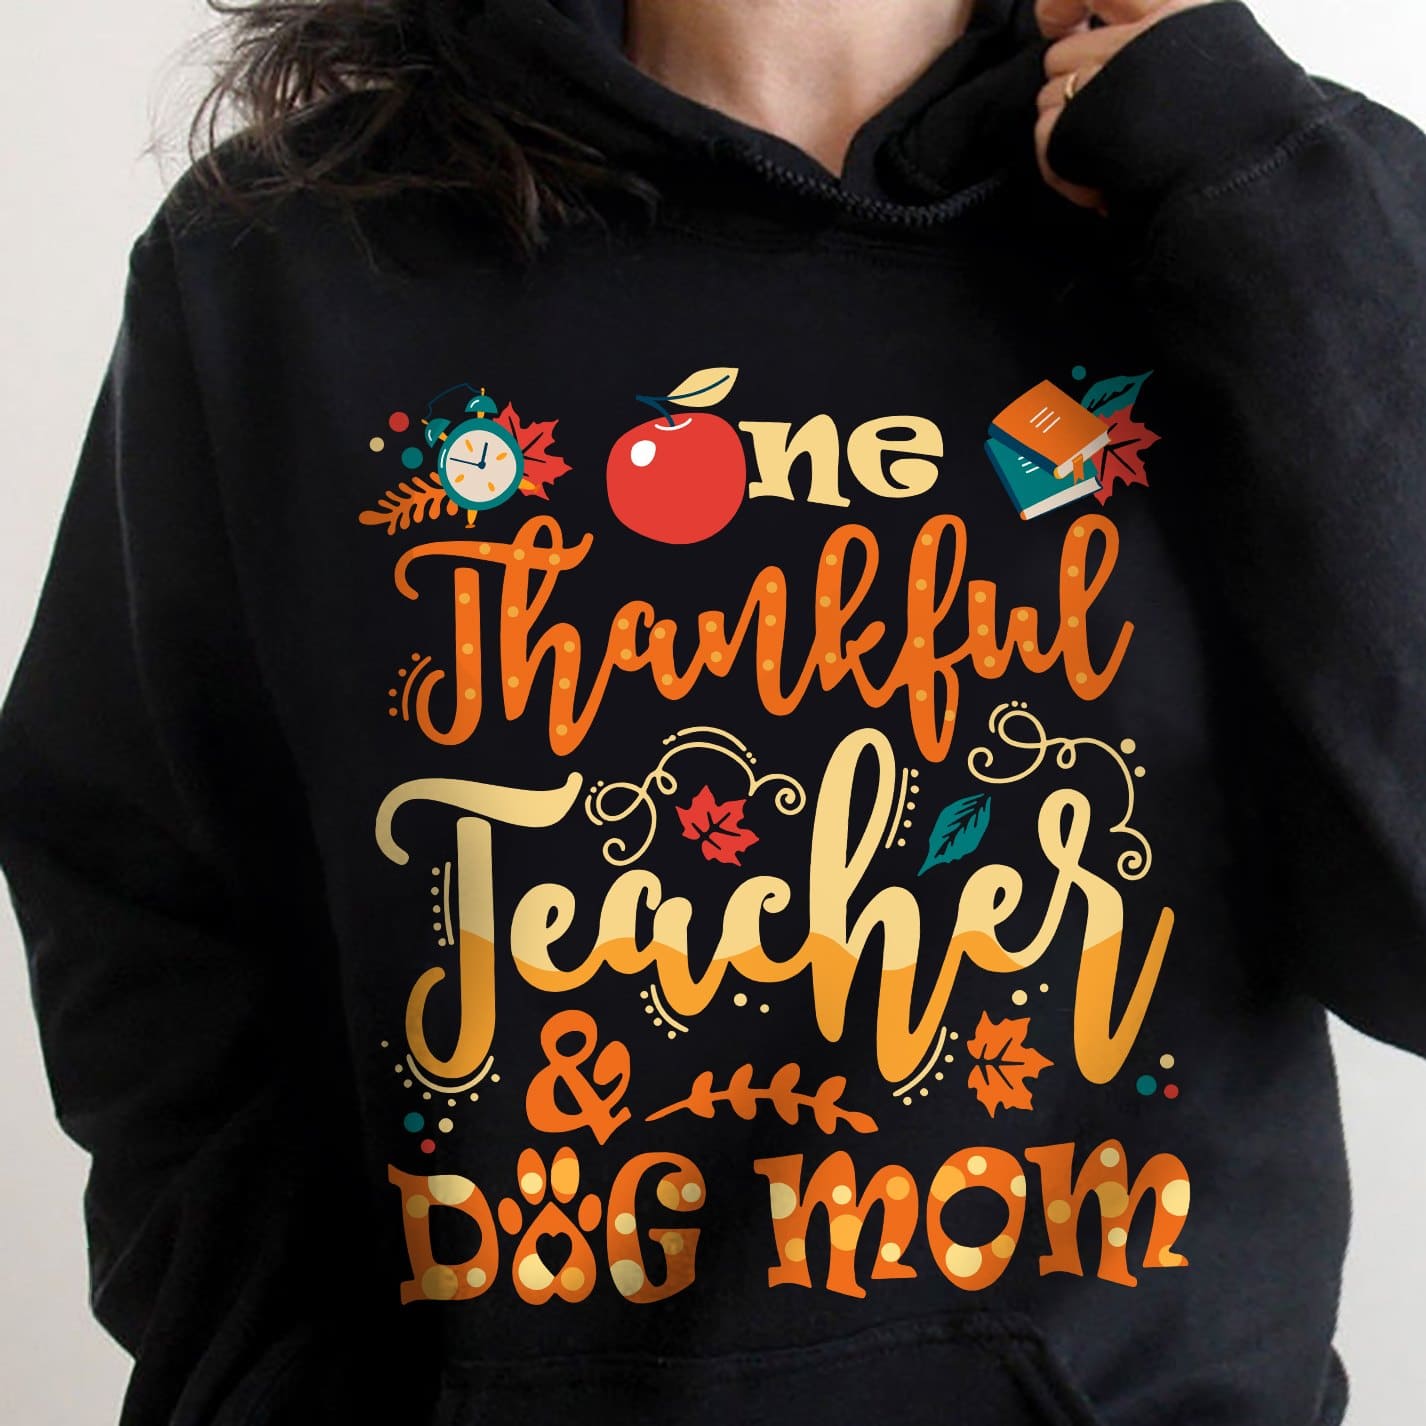 One thankful teacher and dog mom - Gift for dog lover, teacher's T-shirt